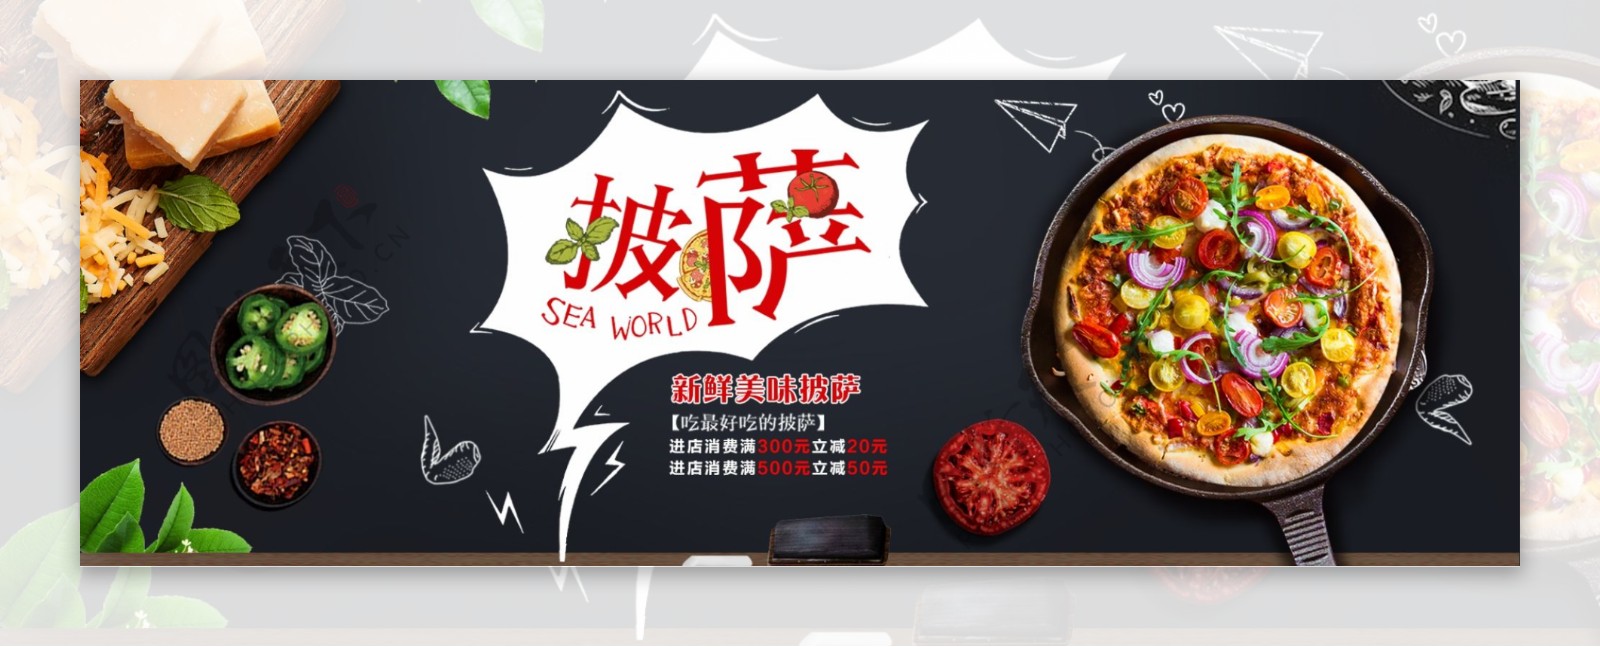 黑色黑板美食美味新鲜披萨电商banner淘宝海报